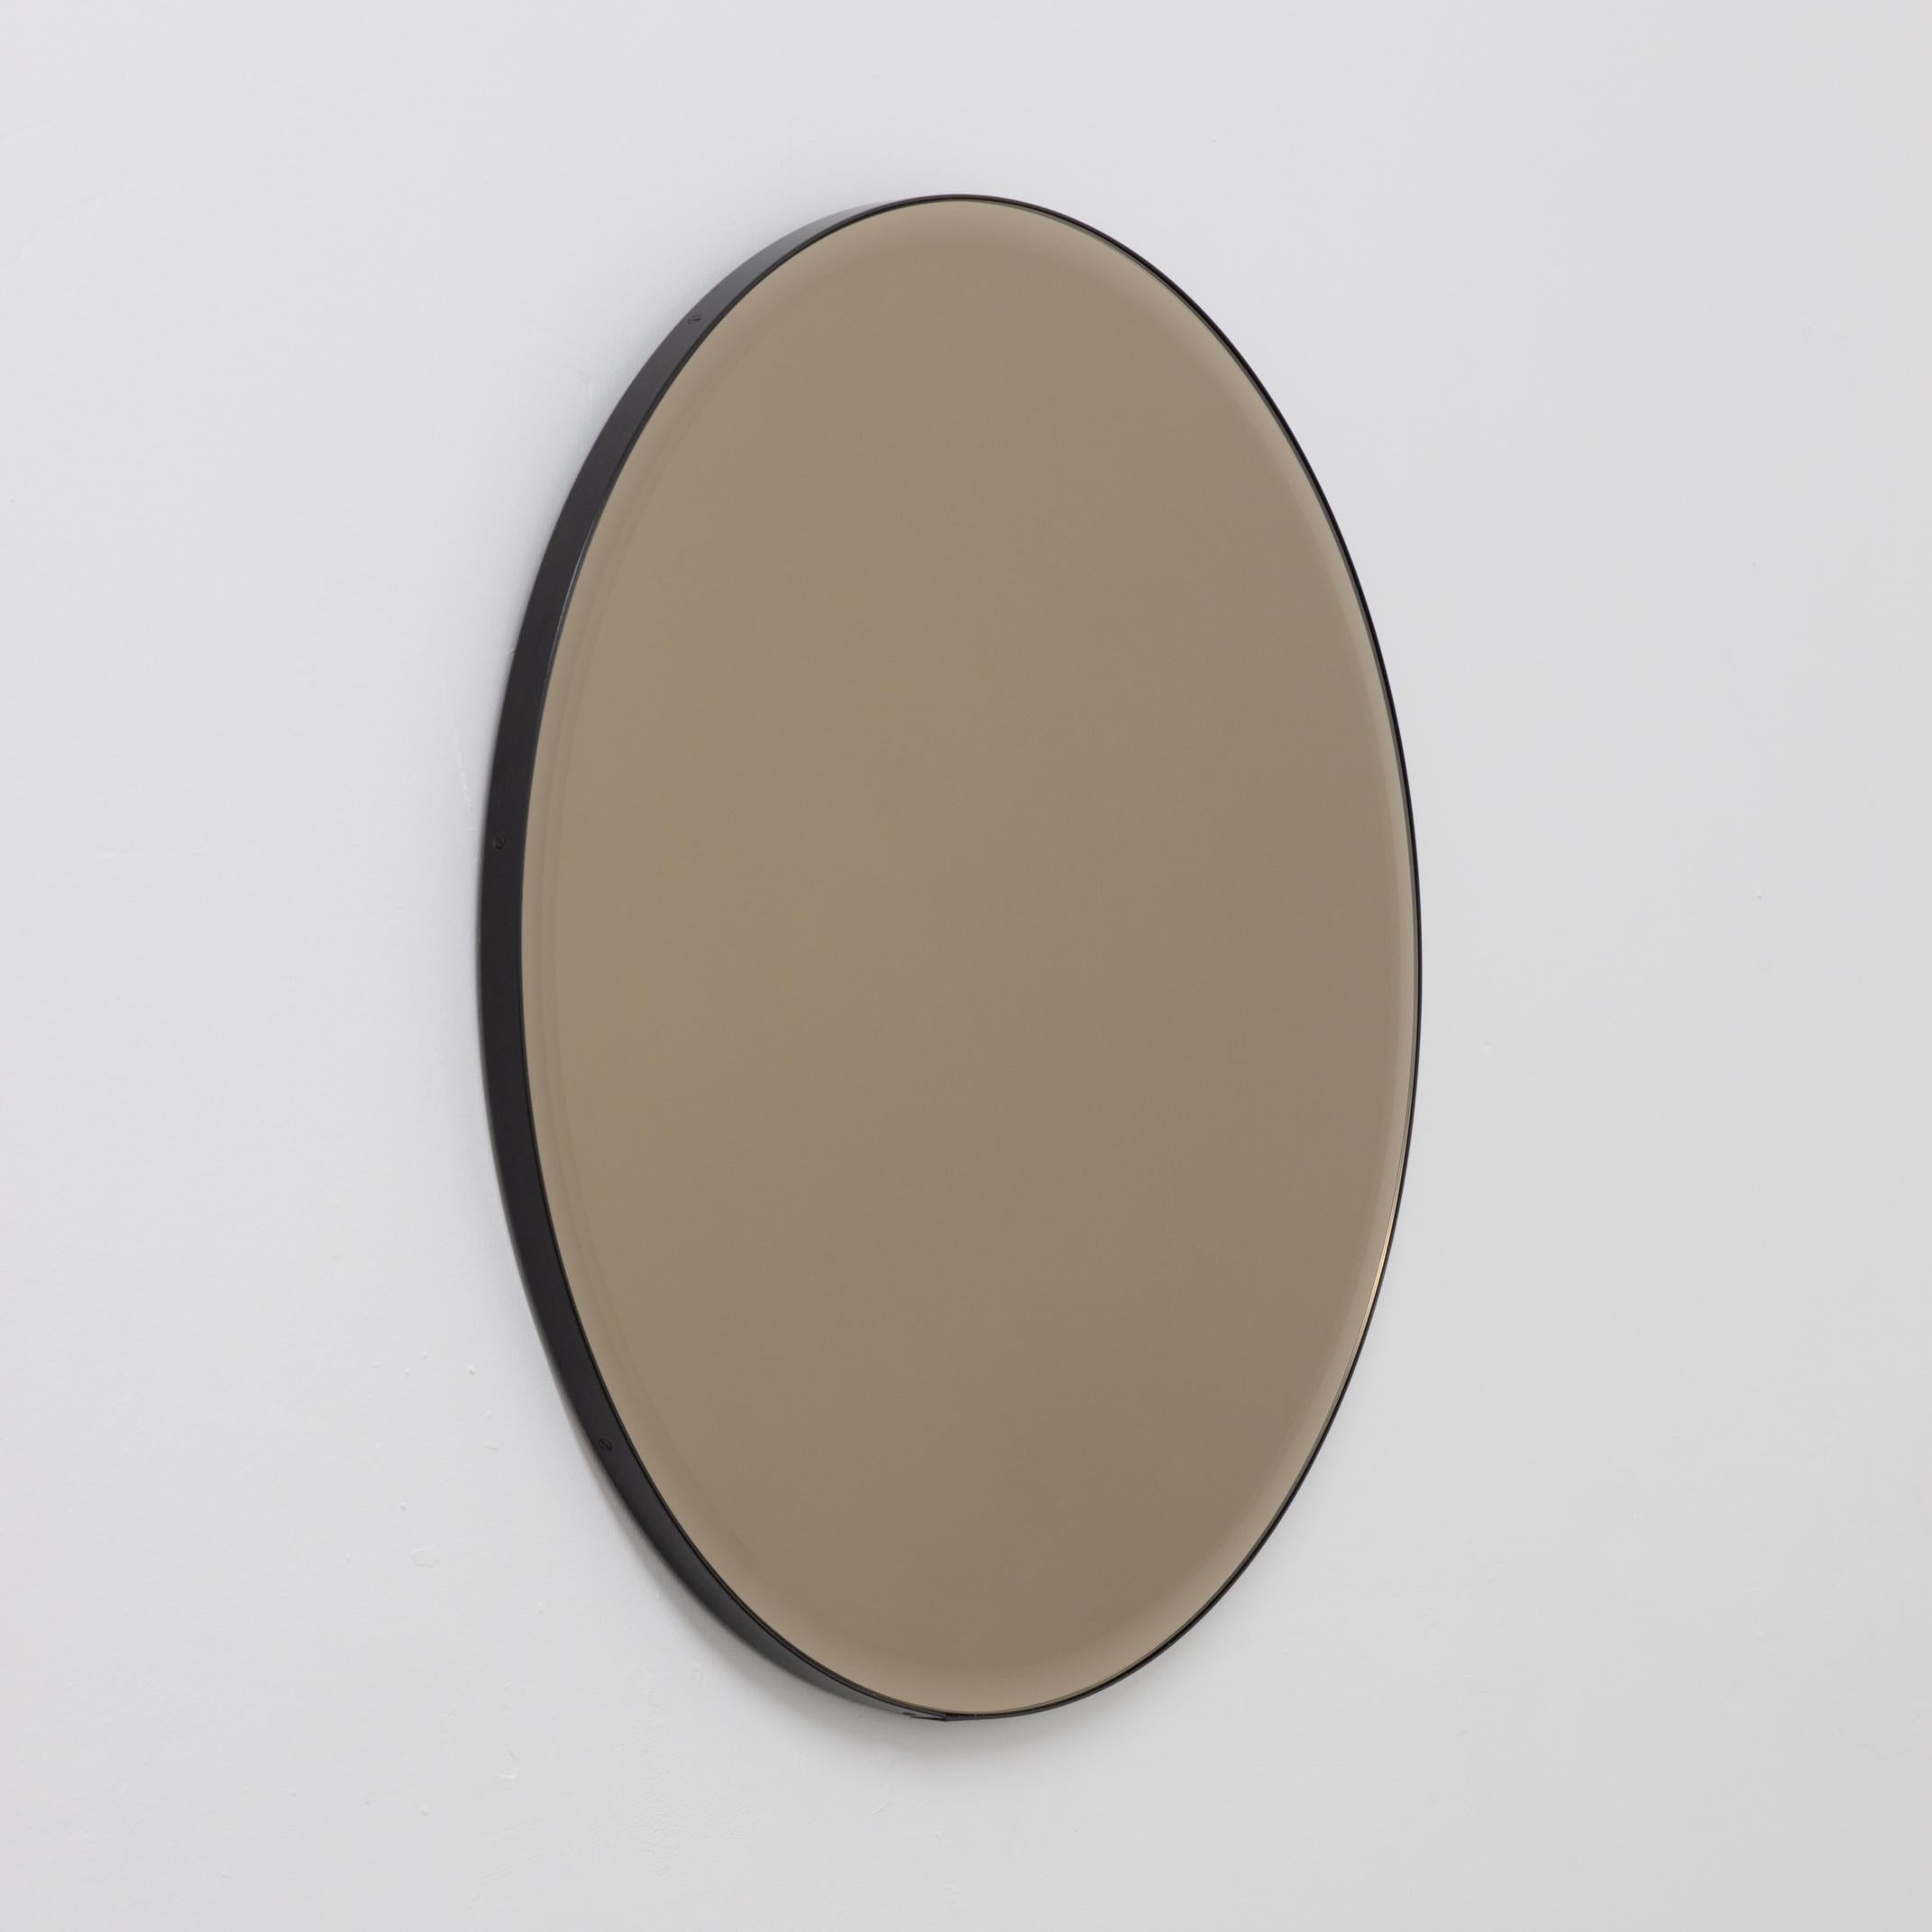 Miroir rond décoratif biseauté teinté bronze avec un élégant cadre en aluminium peint par poudrage en noir. Conçu et fabriqué à la main à Londres, au Royaume-Uni.

Les miroirs de taille moyenne, grande et extra-large (60, 80 et 100 cm) sont équipés